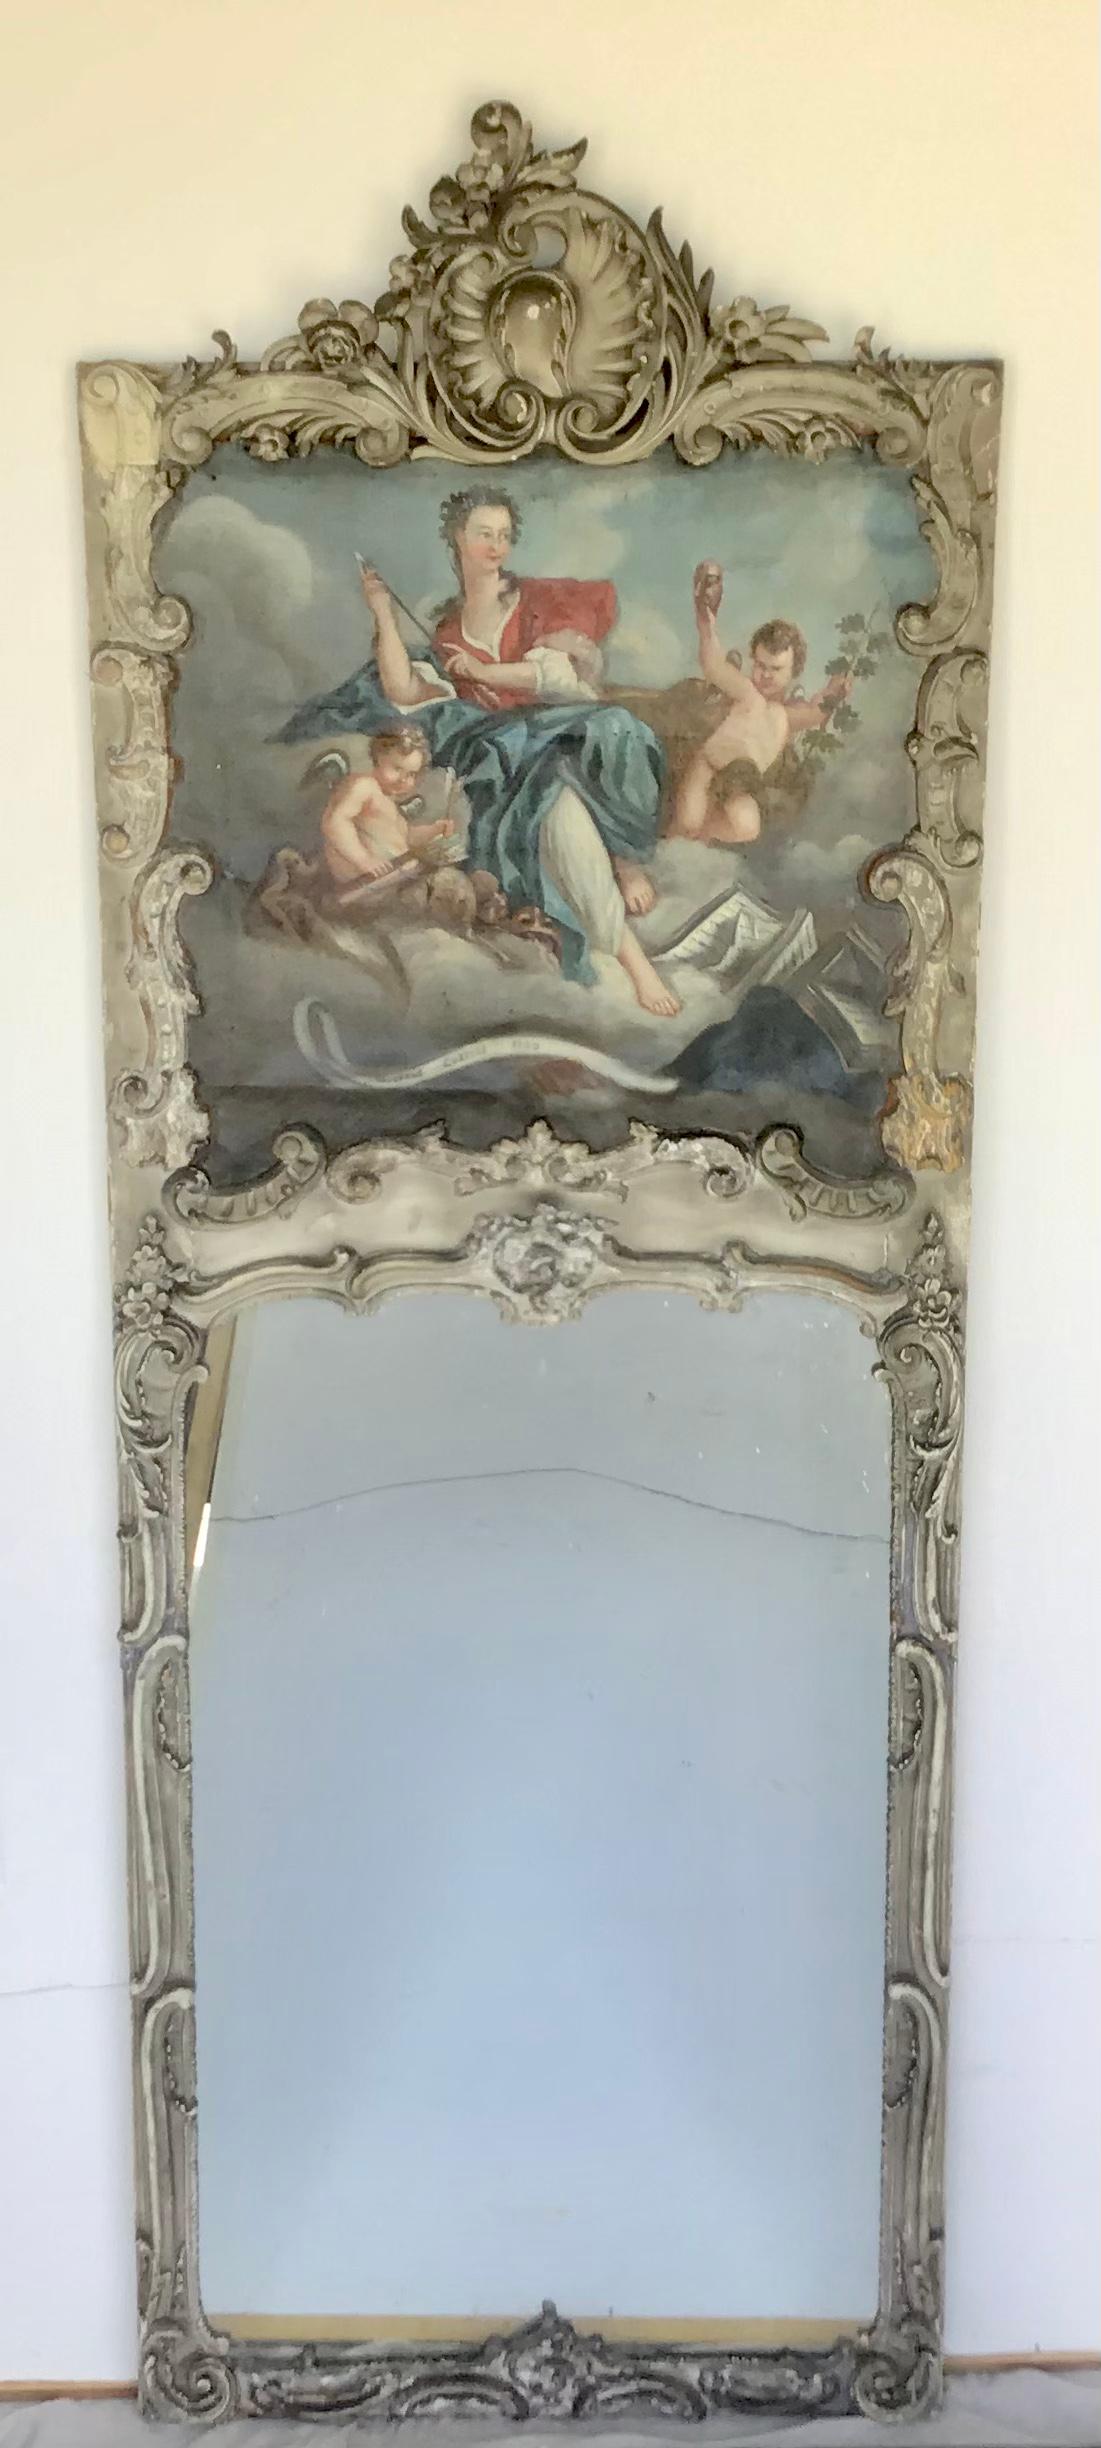 Ce trumeau peint de style Louis XV, datant du 19e siècle, est composé d'un cadre brillamment sculpté à la main entourant une superbe peinture représentant une jeune fille et des angelots dans les nuages. Le cadre présente une magnifique finition